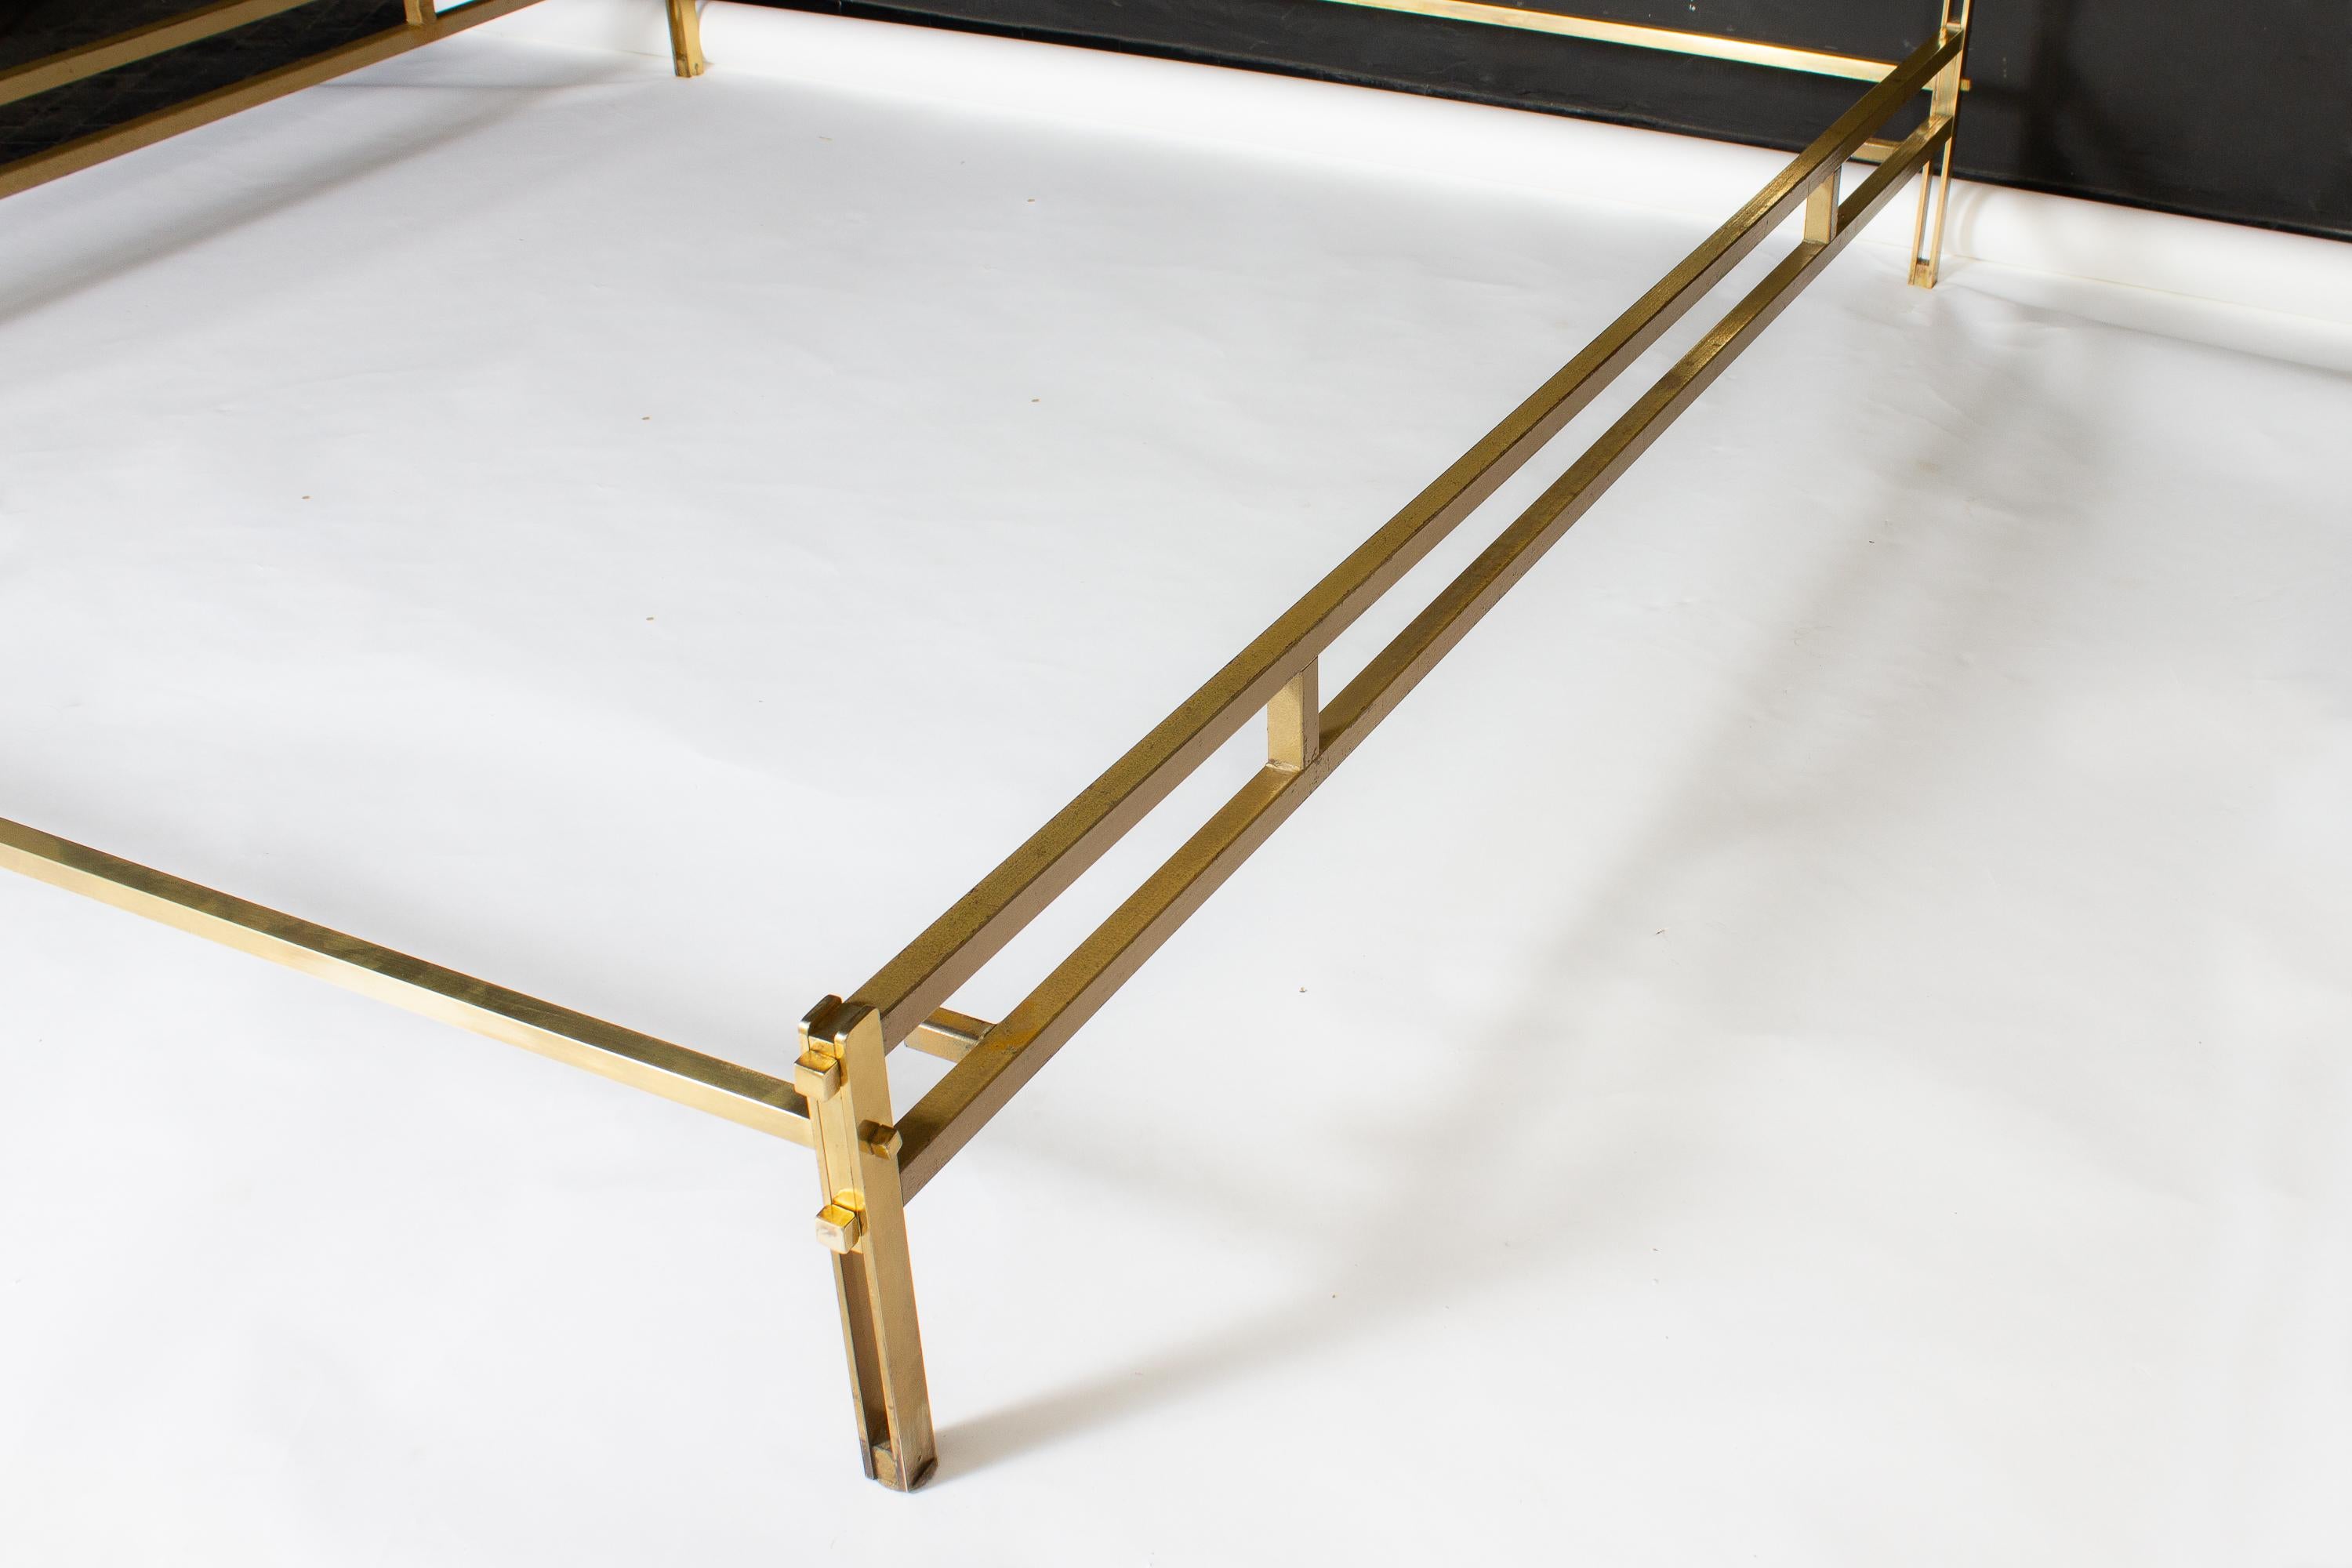 Italian Osvaldo Borsani Elegant Bed with Brass Details, 1950